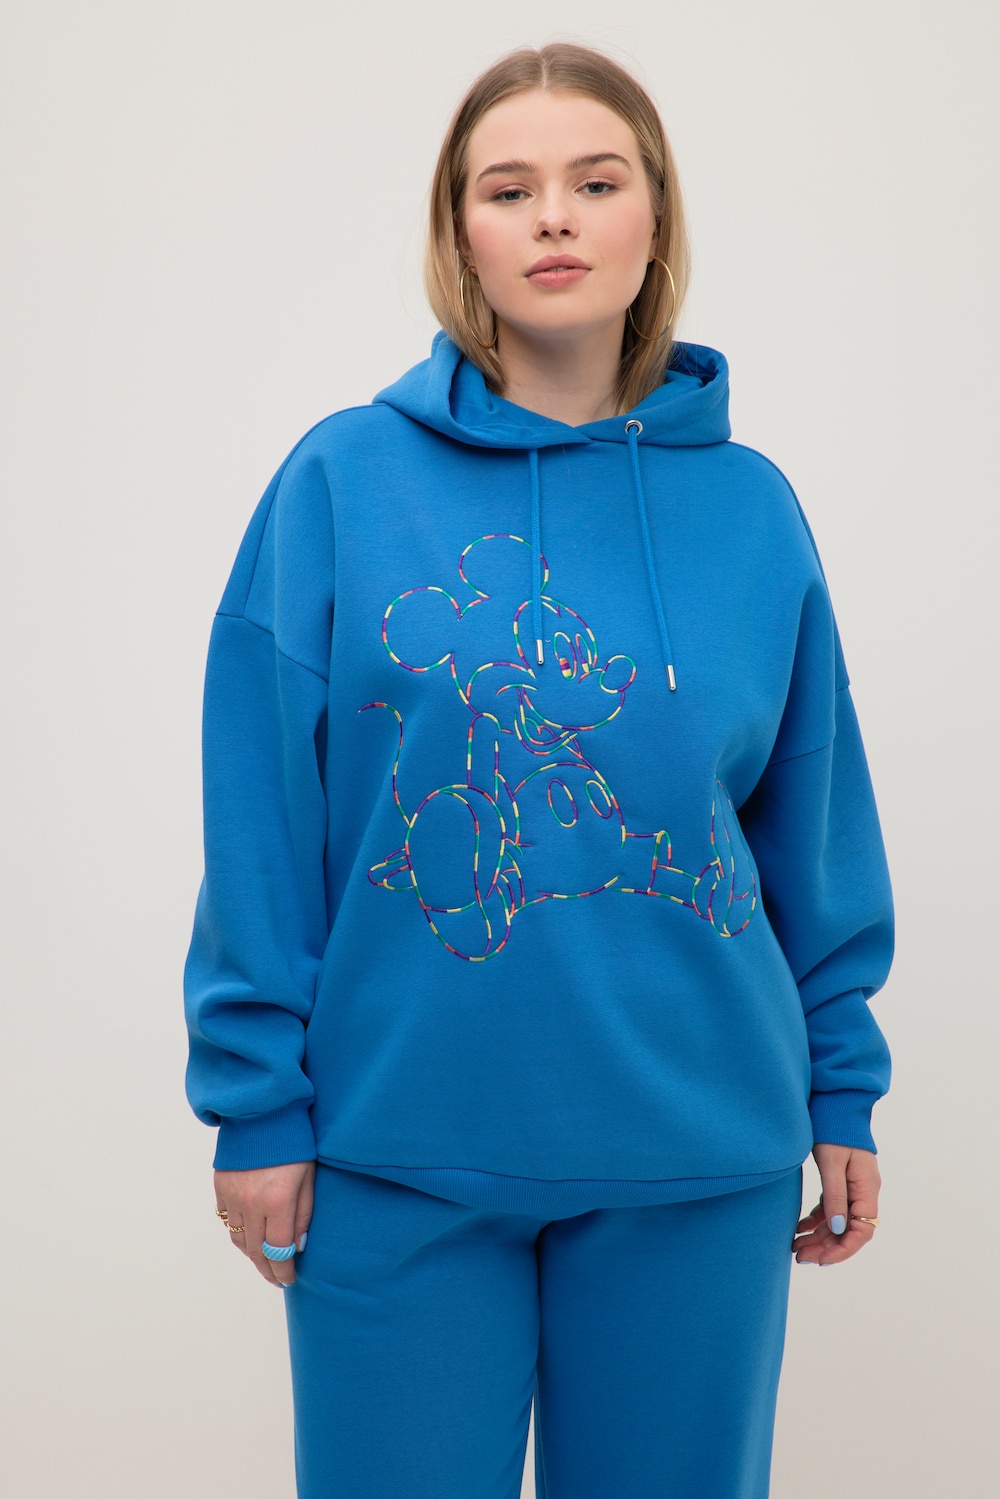 Grote Maten hoodie, Dames, blauw, Maat: 42/44, Katoen/Polyester, Studio Untold